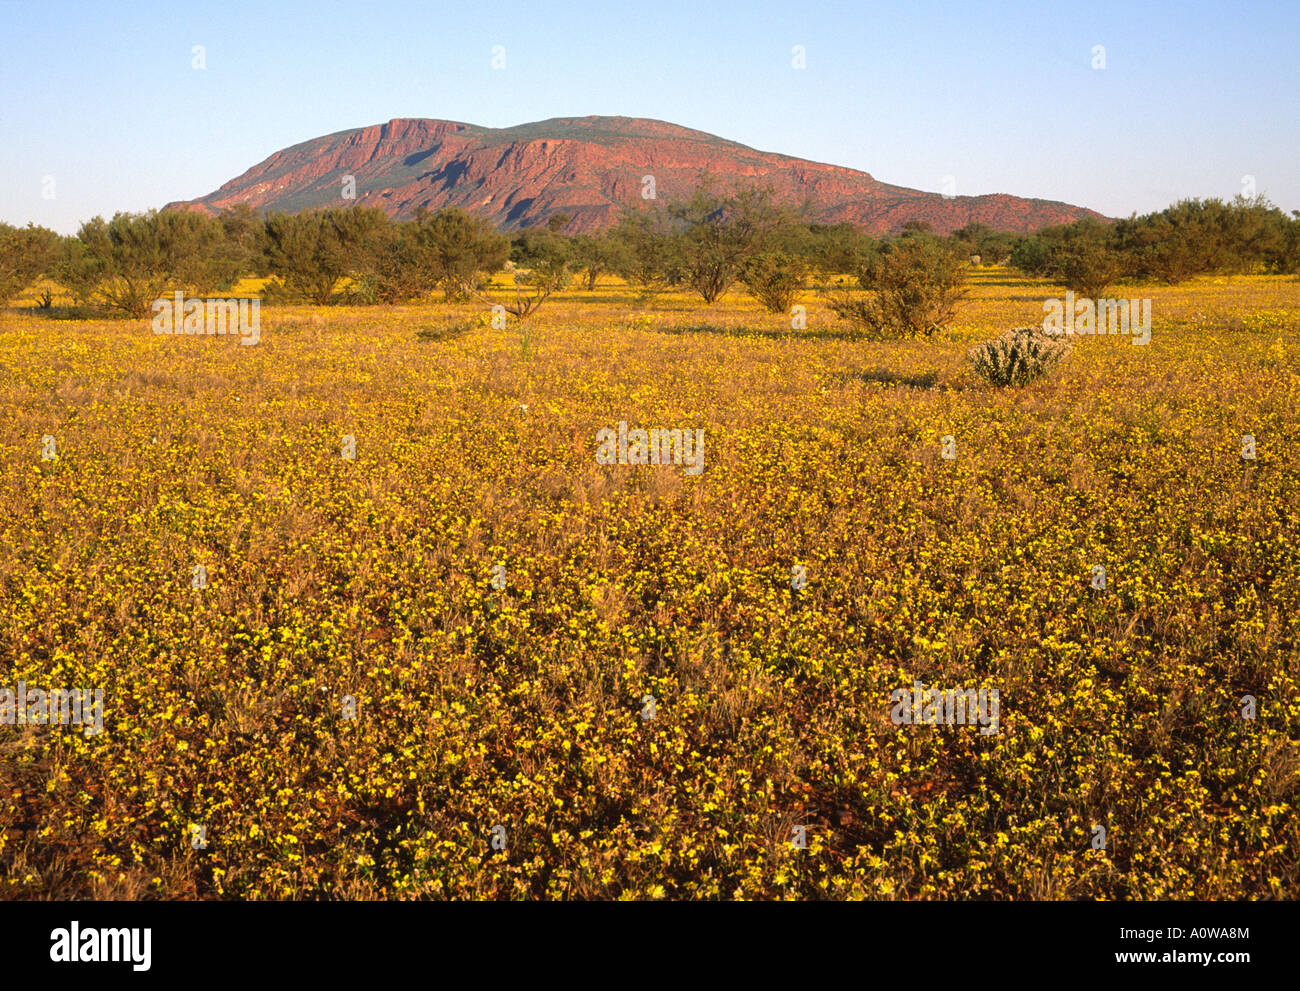 Le mont Augustus, en Australie Désert de floraison Banque D'Images